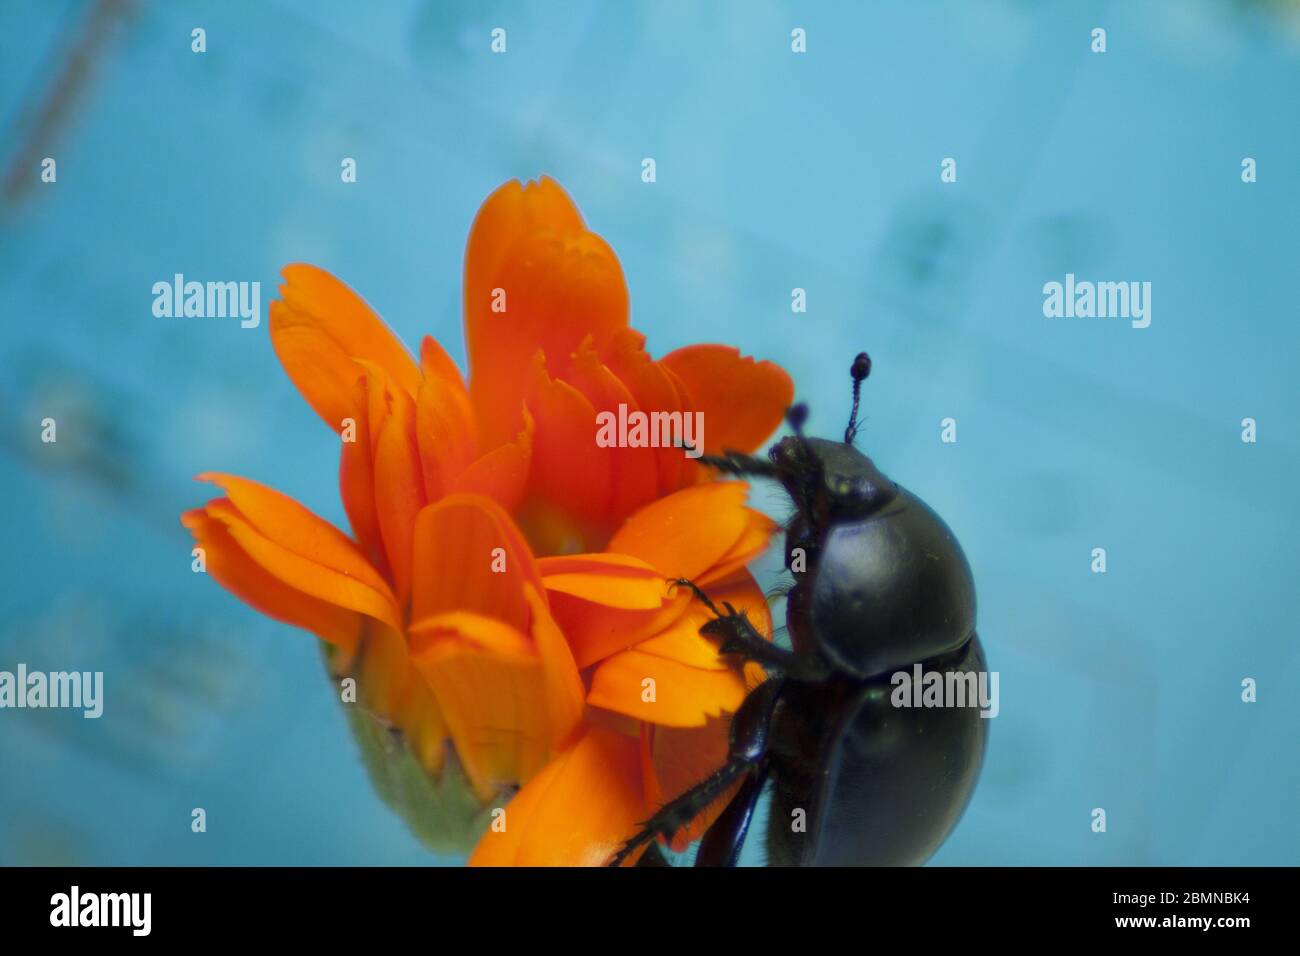 Mistkäfer auf einer orangefarbenen Blume in Nahaufnahme auf blauem Hintergrund. Stockfoto